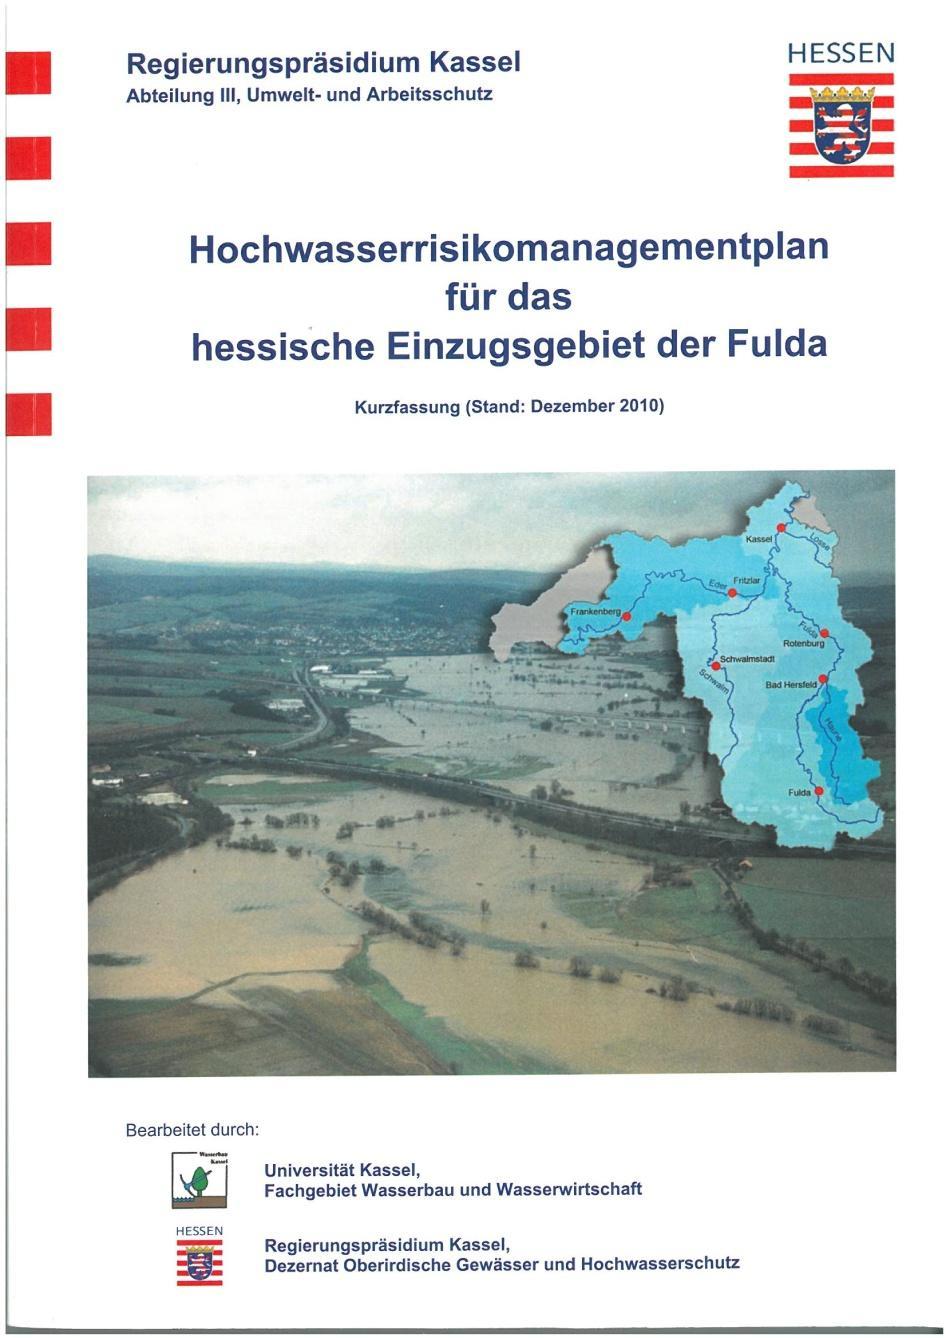 Erstellung der Hochwasserrisikomanagementpläne in Hessen Pilotprojekt für das Einzugsgebiet der Fulda